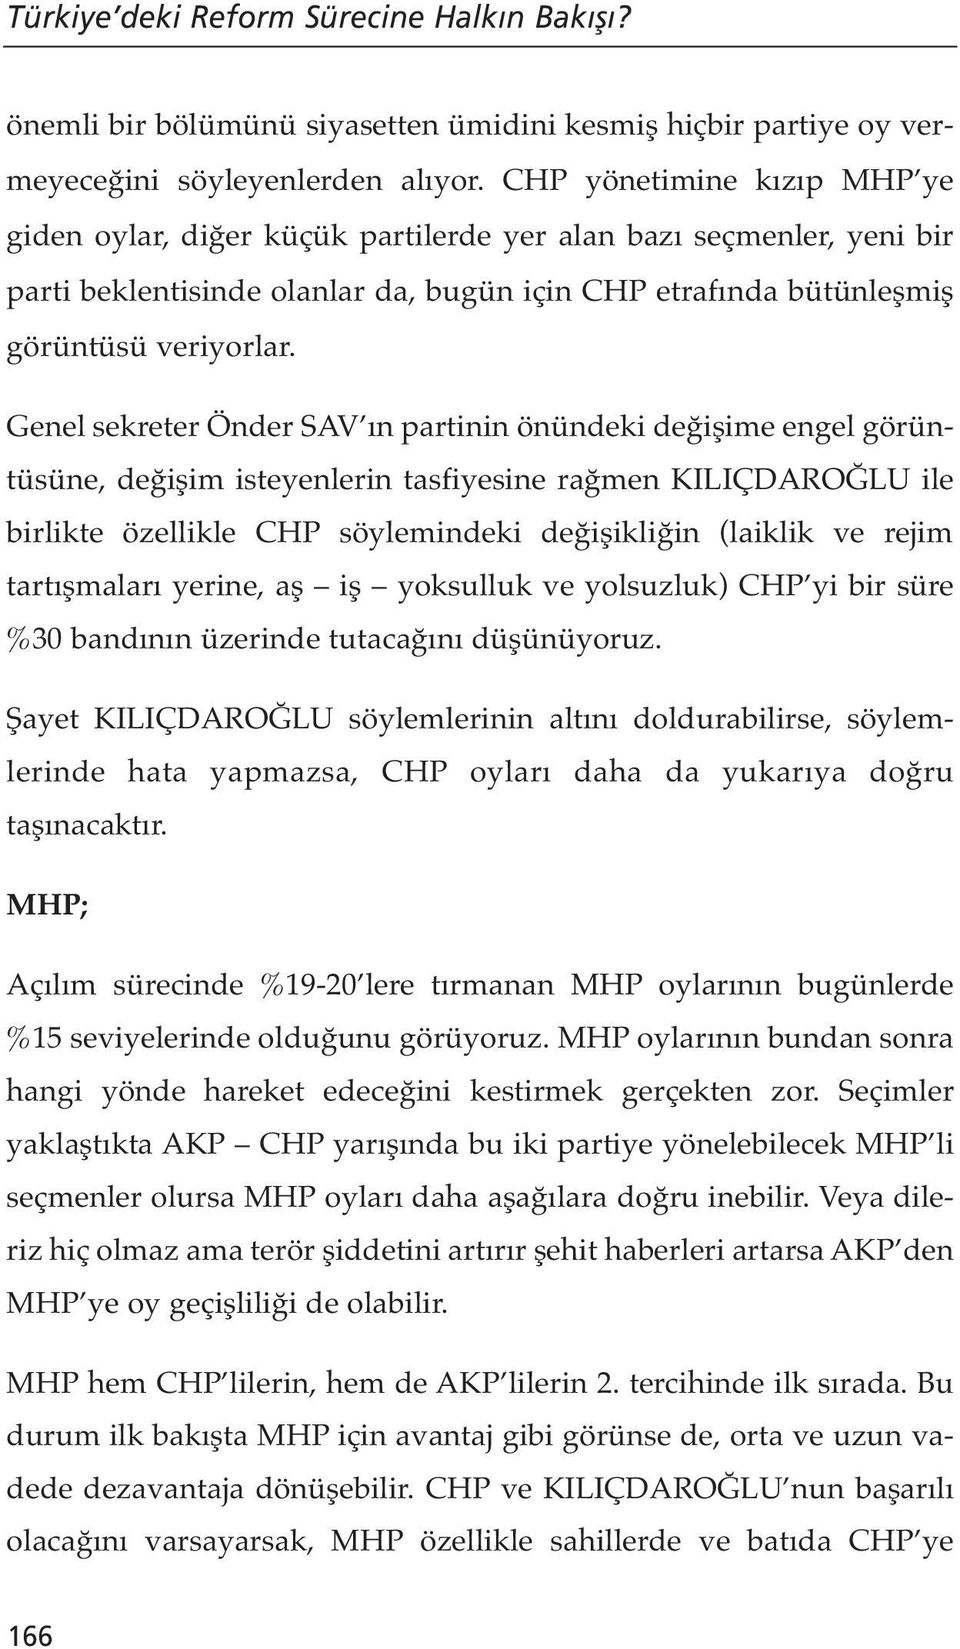 Genel sekreter Önder SAV ın partinin önündeki değişime engel görüntüsüne, değişim isteyenlerin tasfiyesine rağmen KILIÇDAROĞLU ile birlikte özellikle CHP söylemindeki değişikliğin (laiklik ve rejim